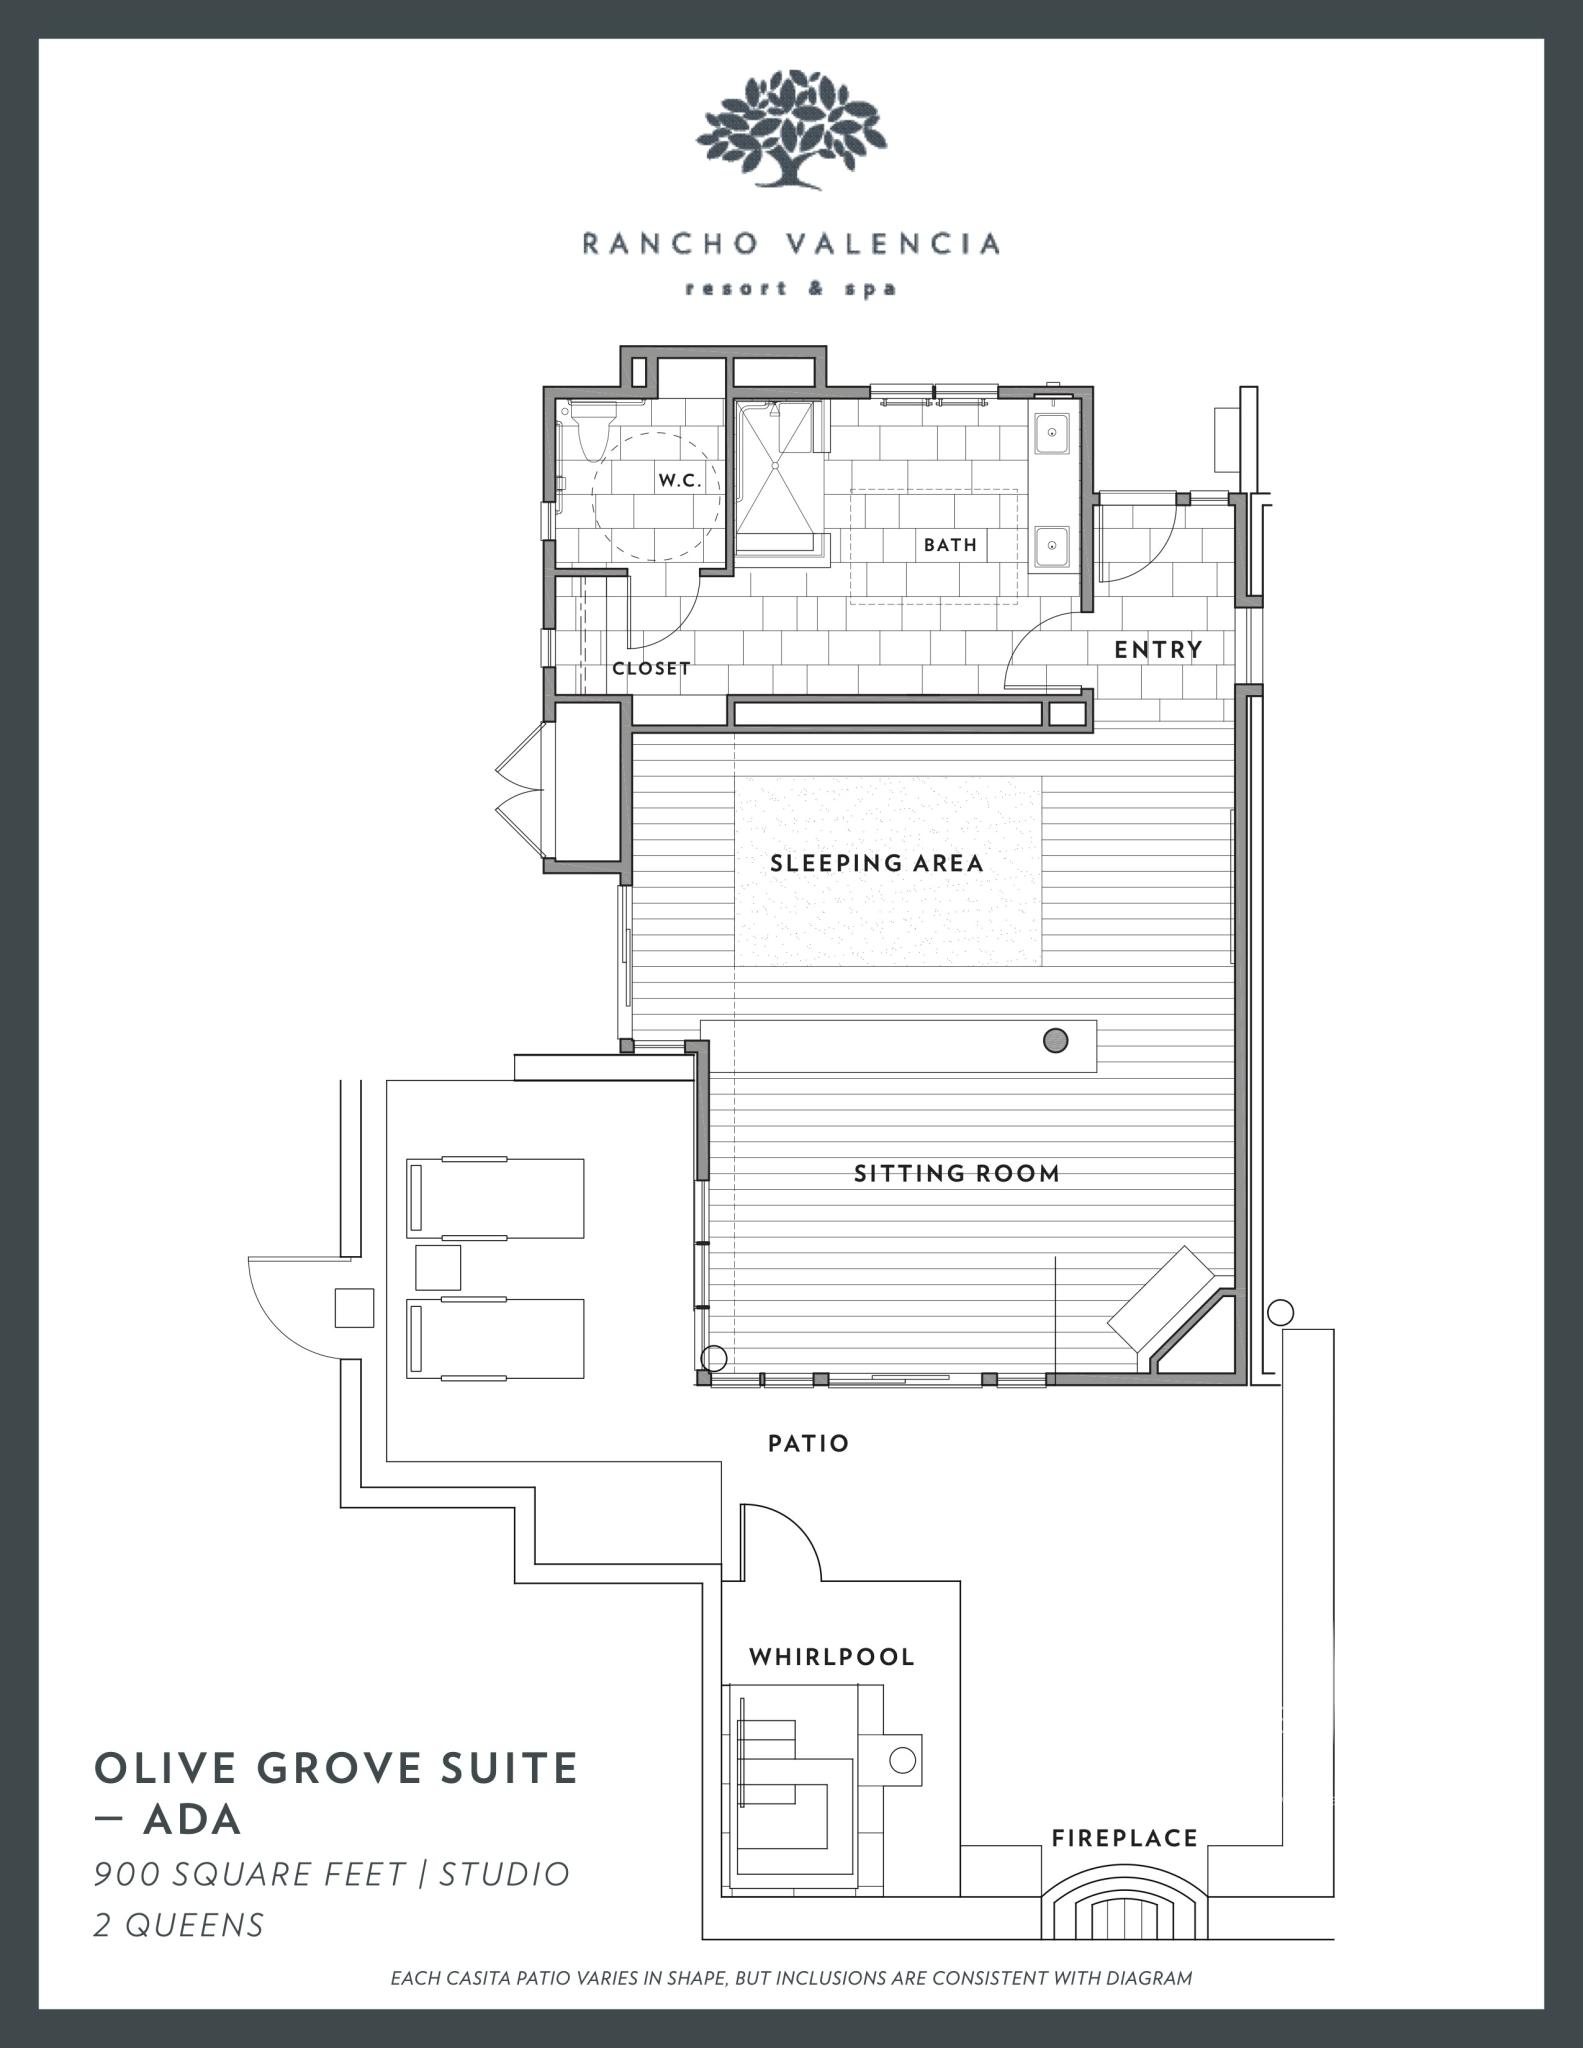 Rancho Valencia ADA Olive Grove Suite Floorplan